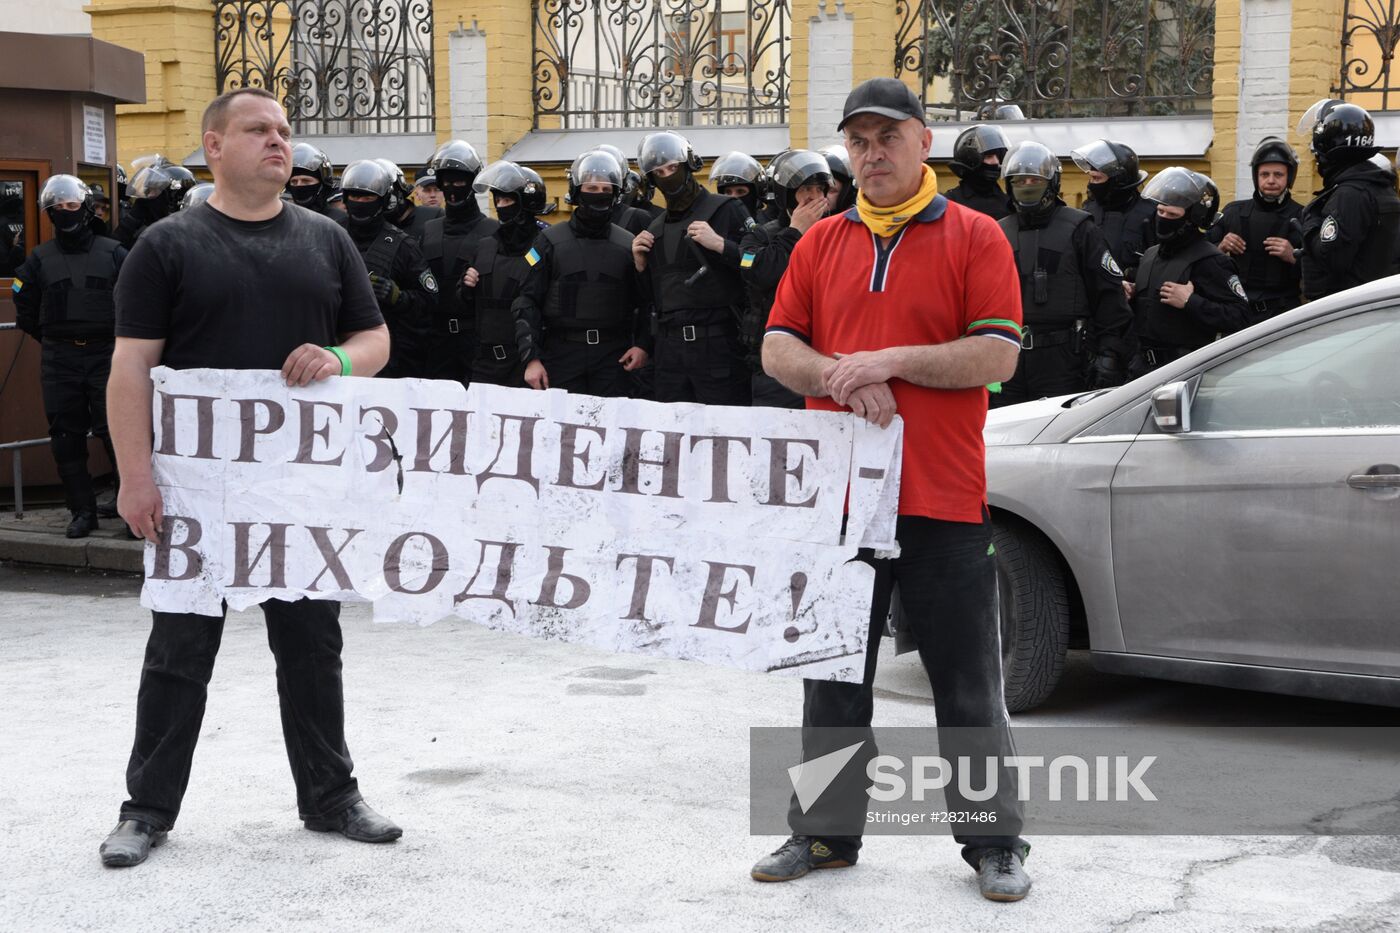 Protest outside Ukraine's president office